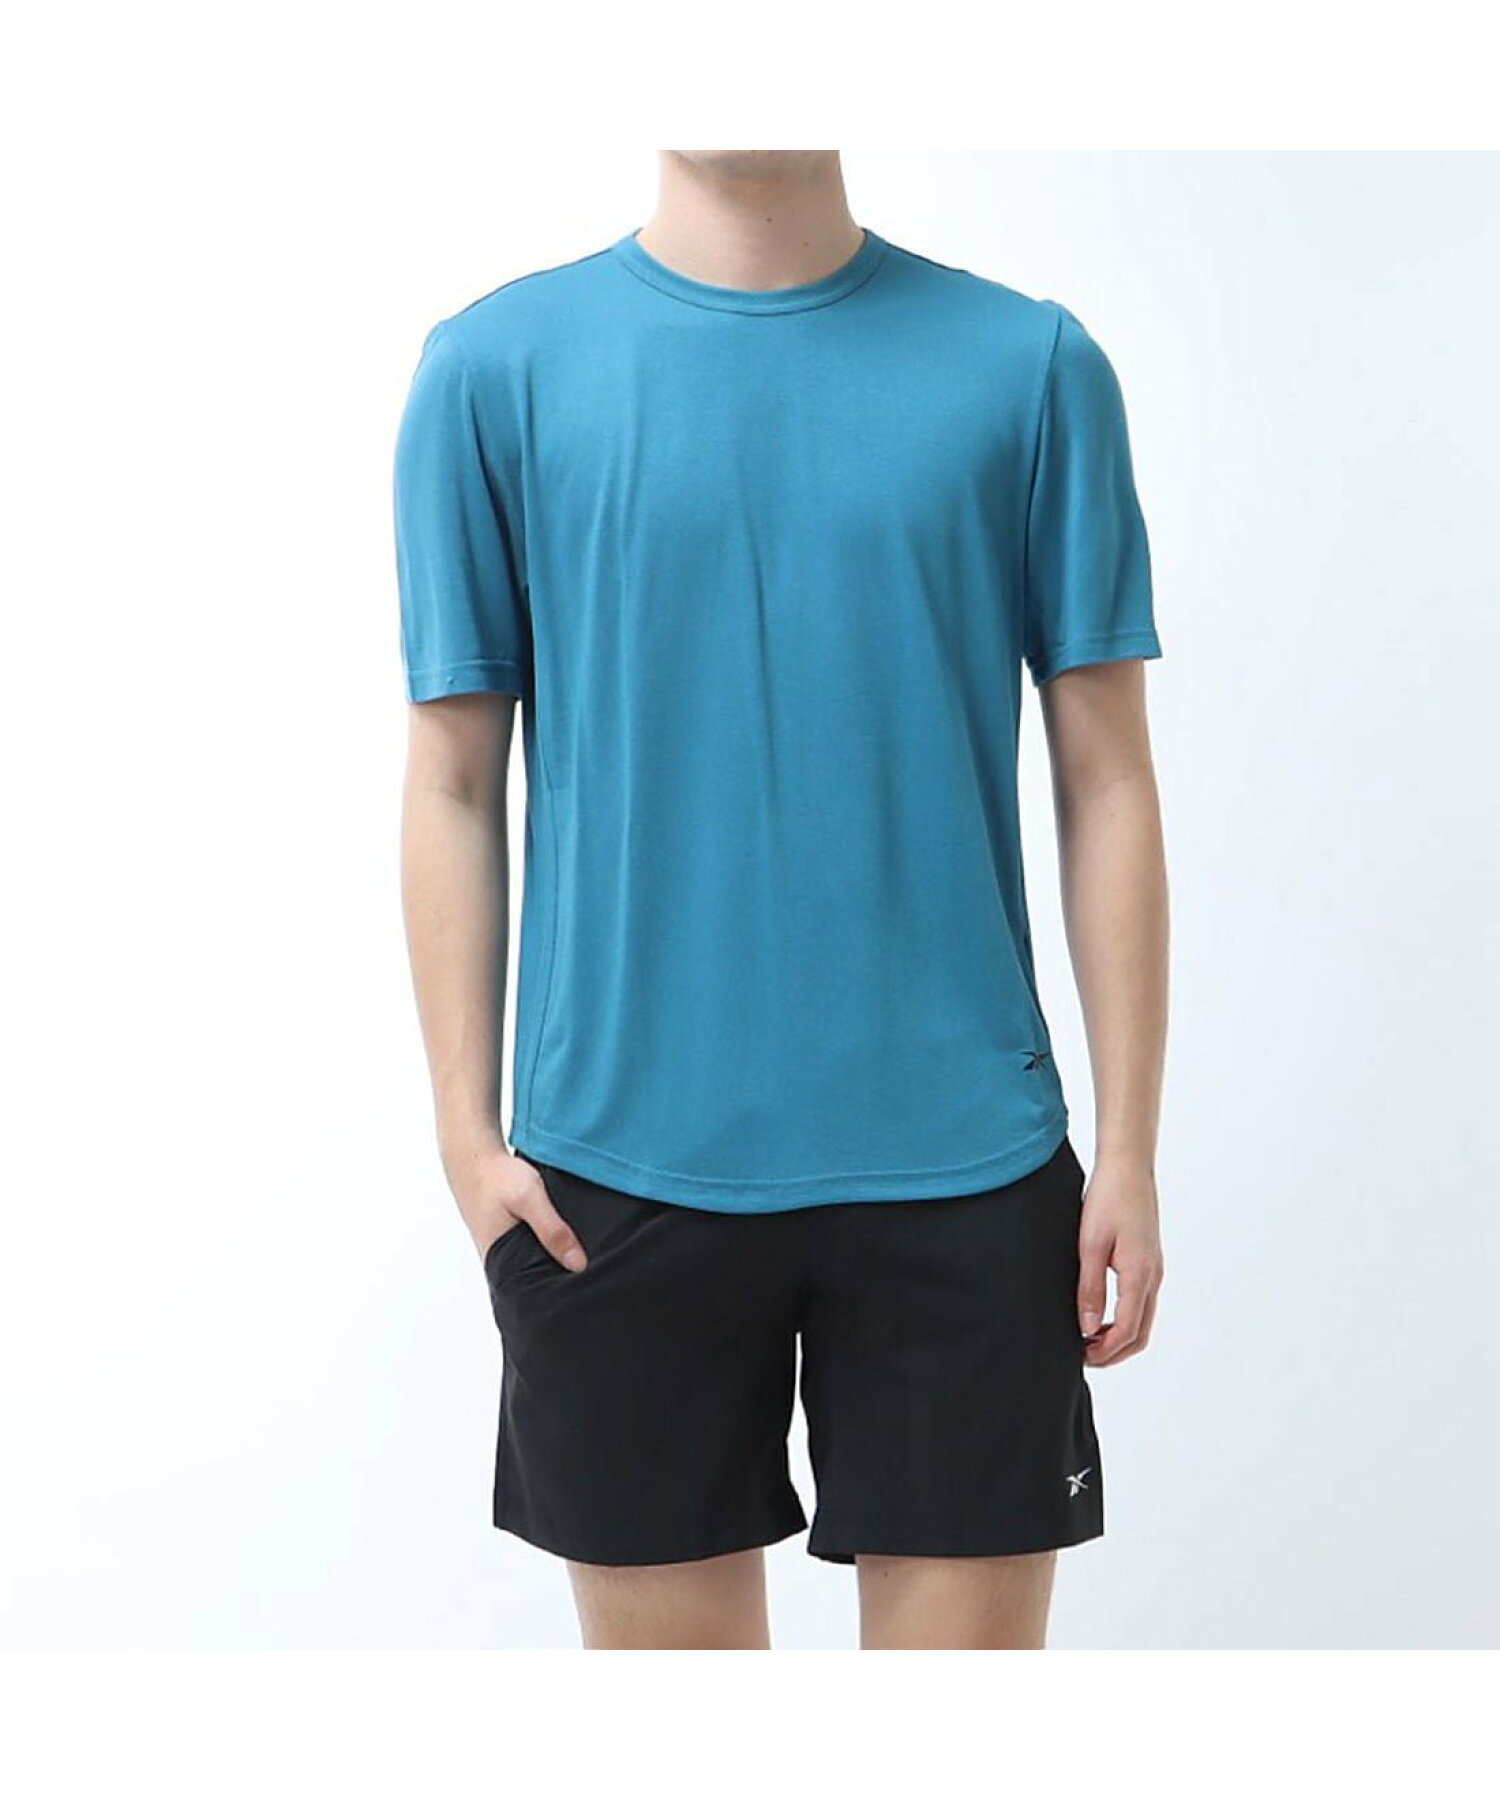 アクティブチル+ドリームブレンド Tシャツ / Activchill+DREAMBLEND T-Shirt